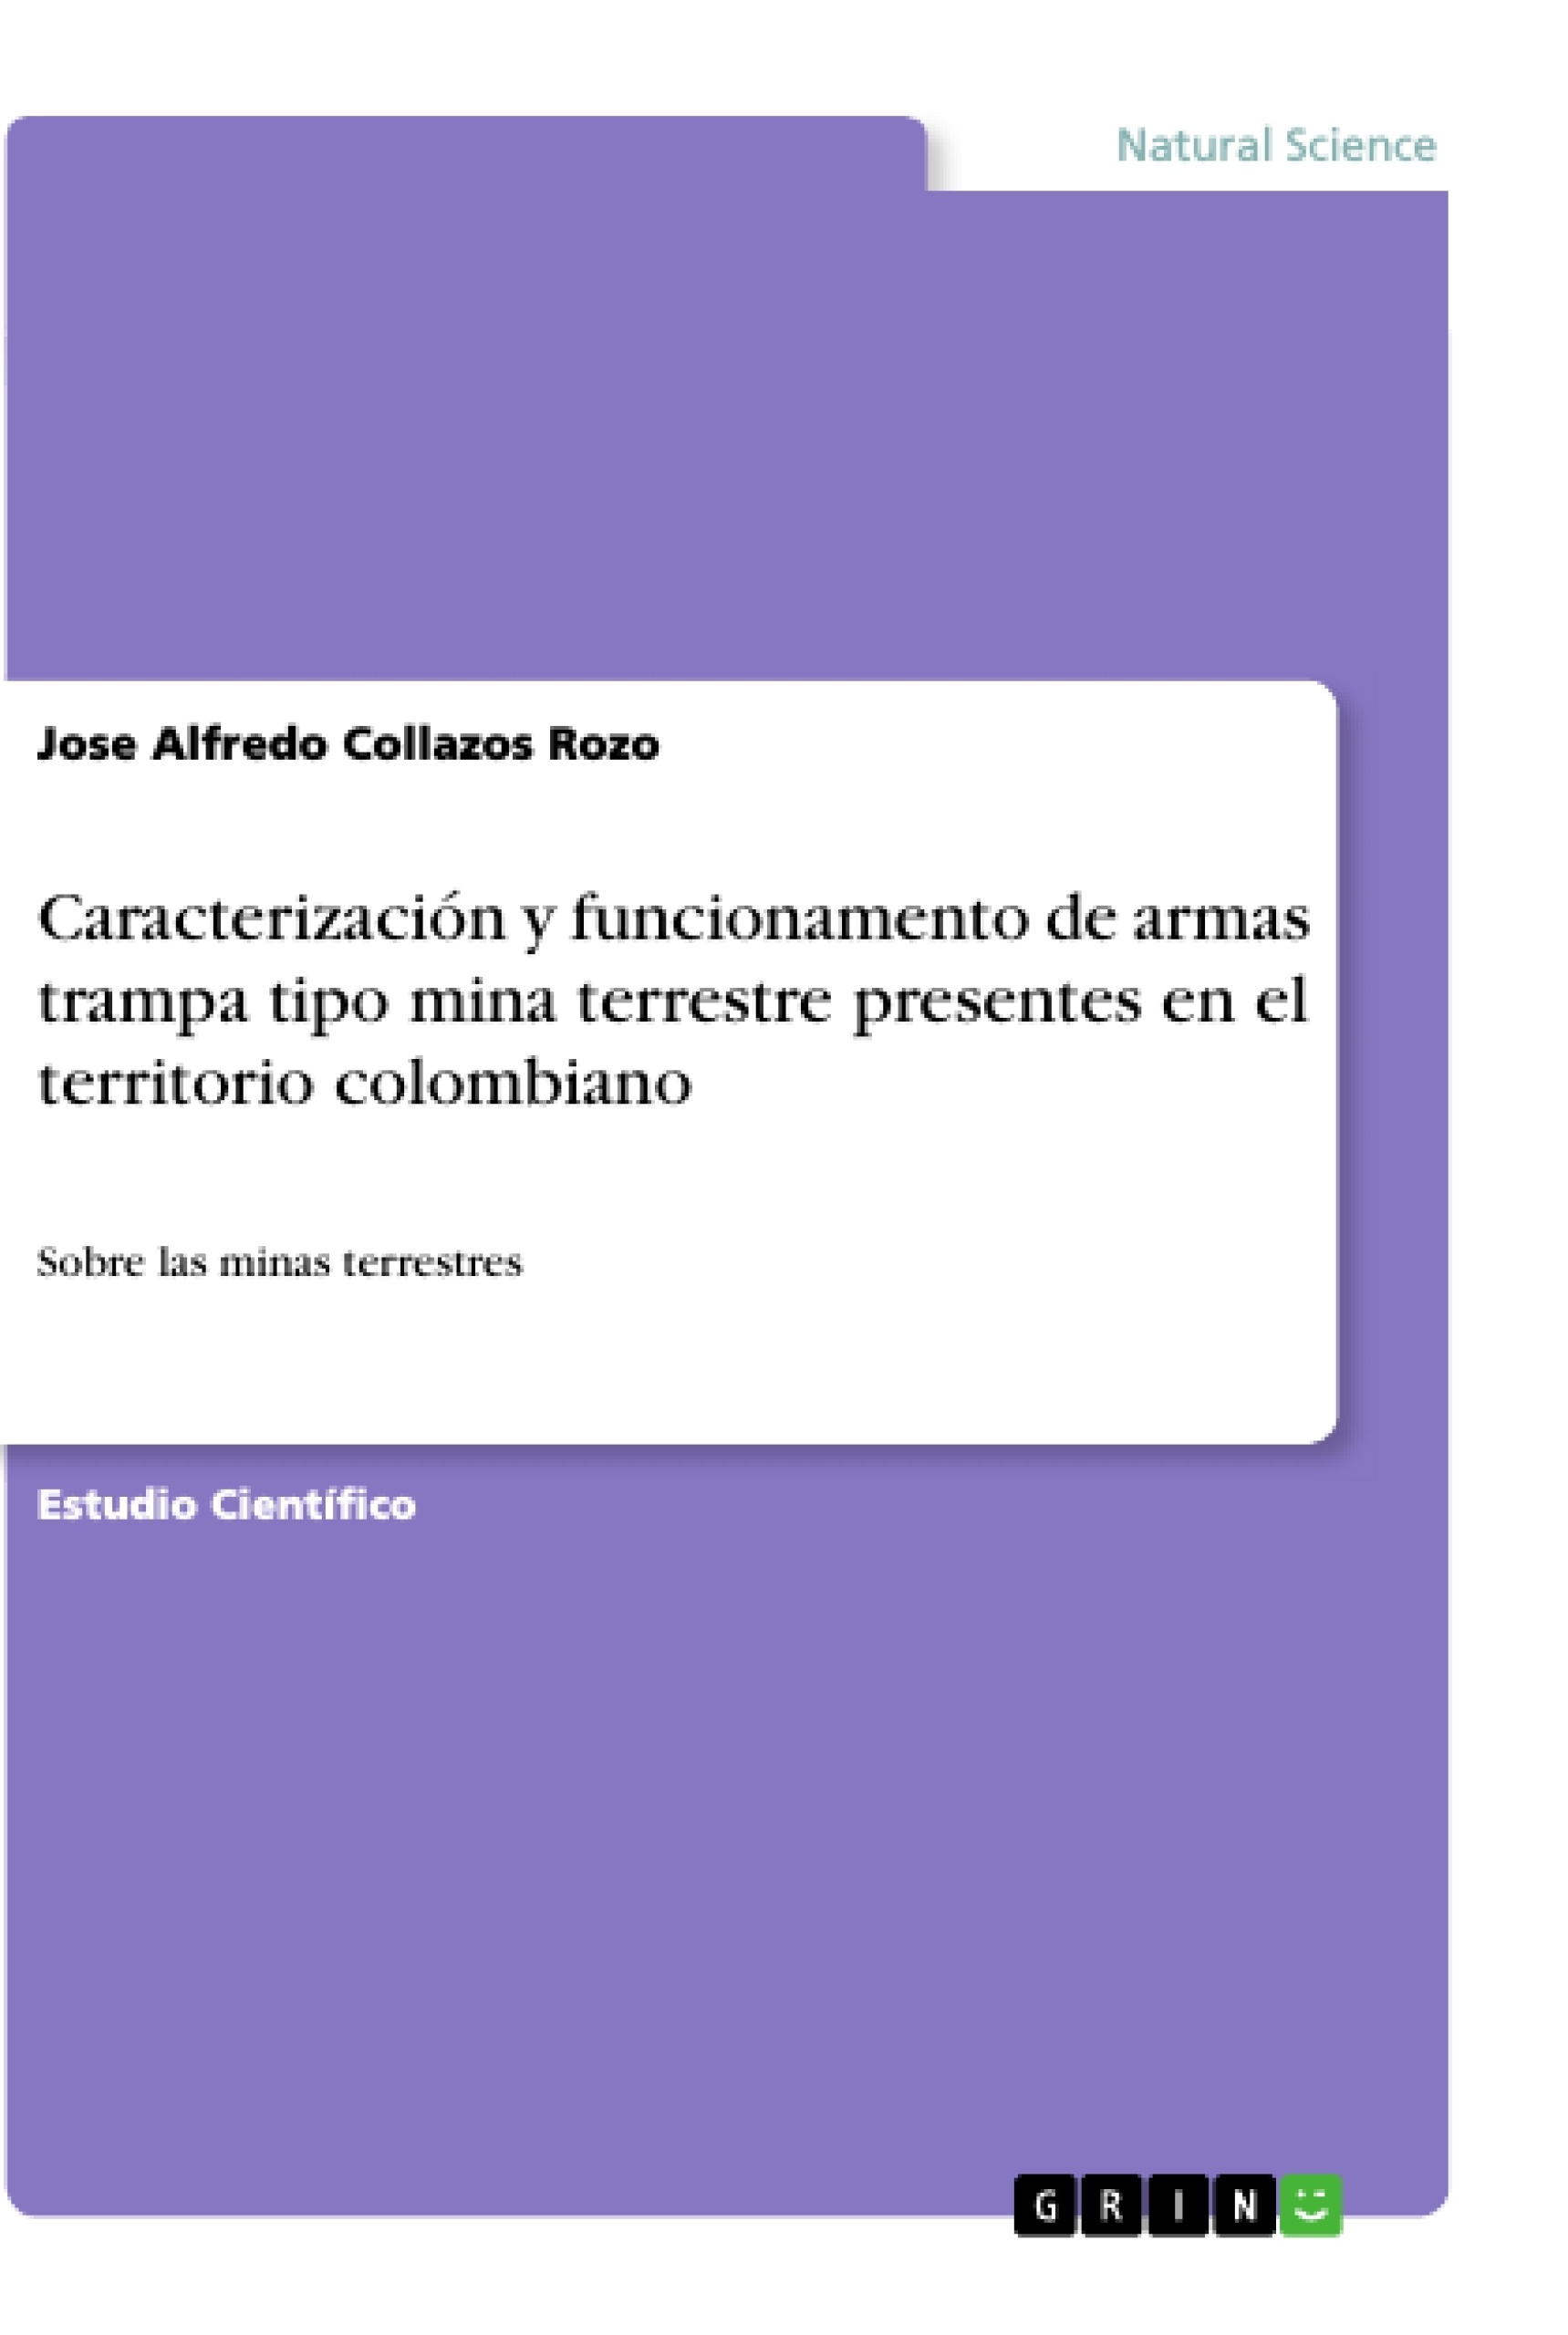 Title: Caracterización y funcionamento de armas trampa tipo mina terrestre presentes en el territorio colombiano